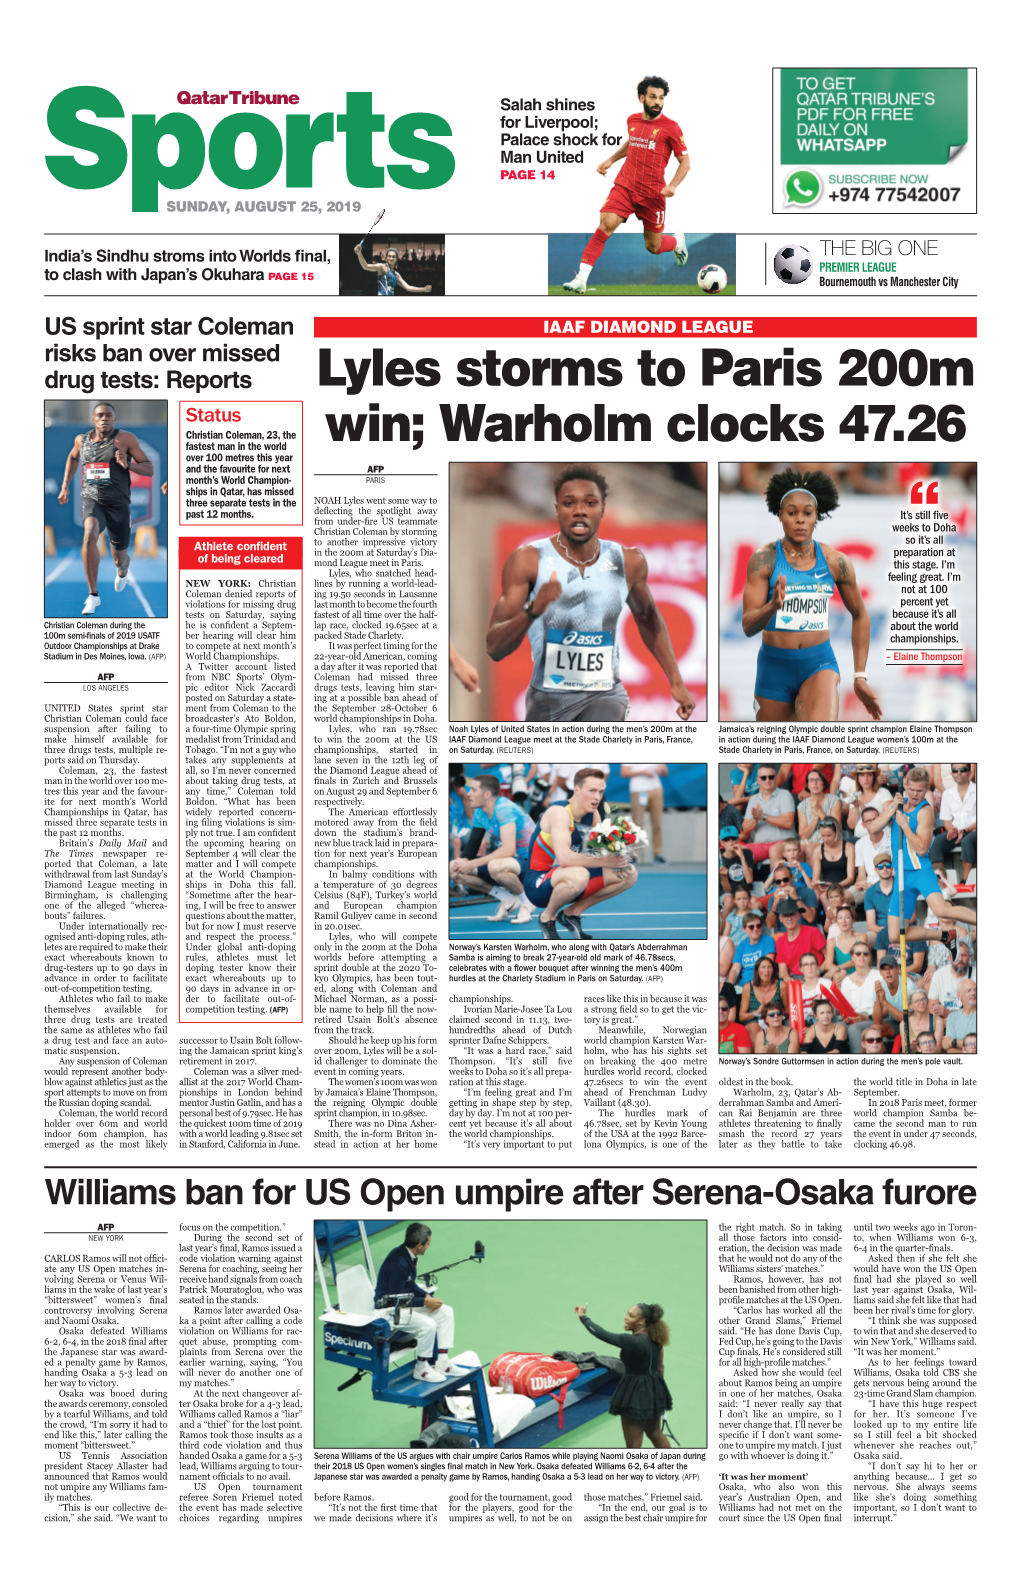 Lyles Storms to Paris 200M